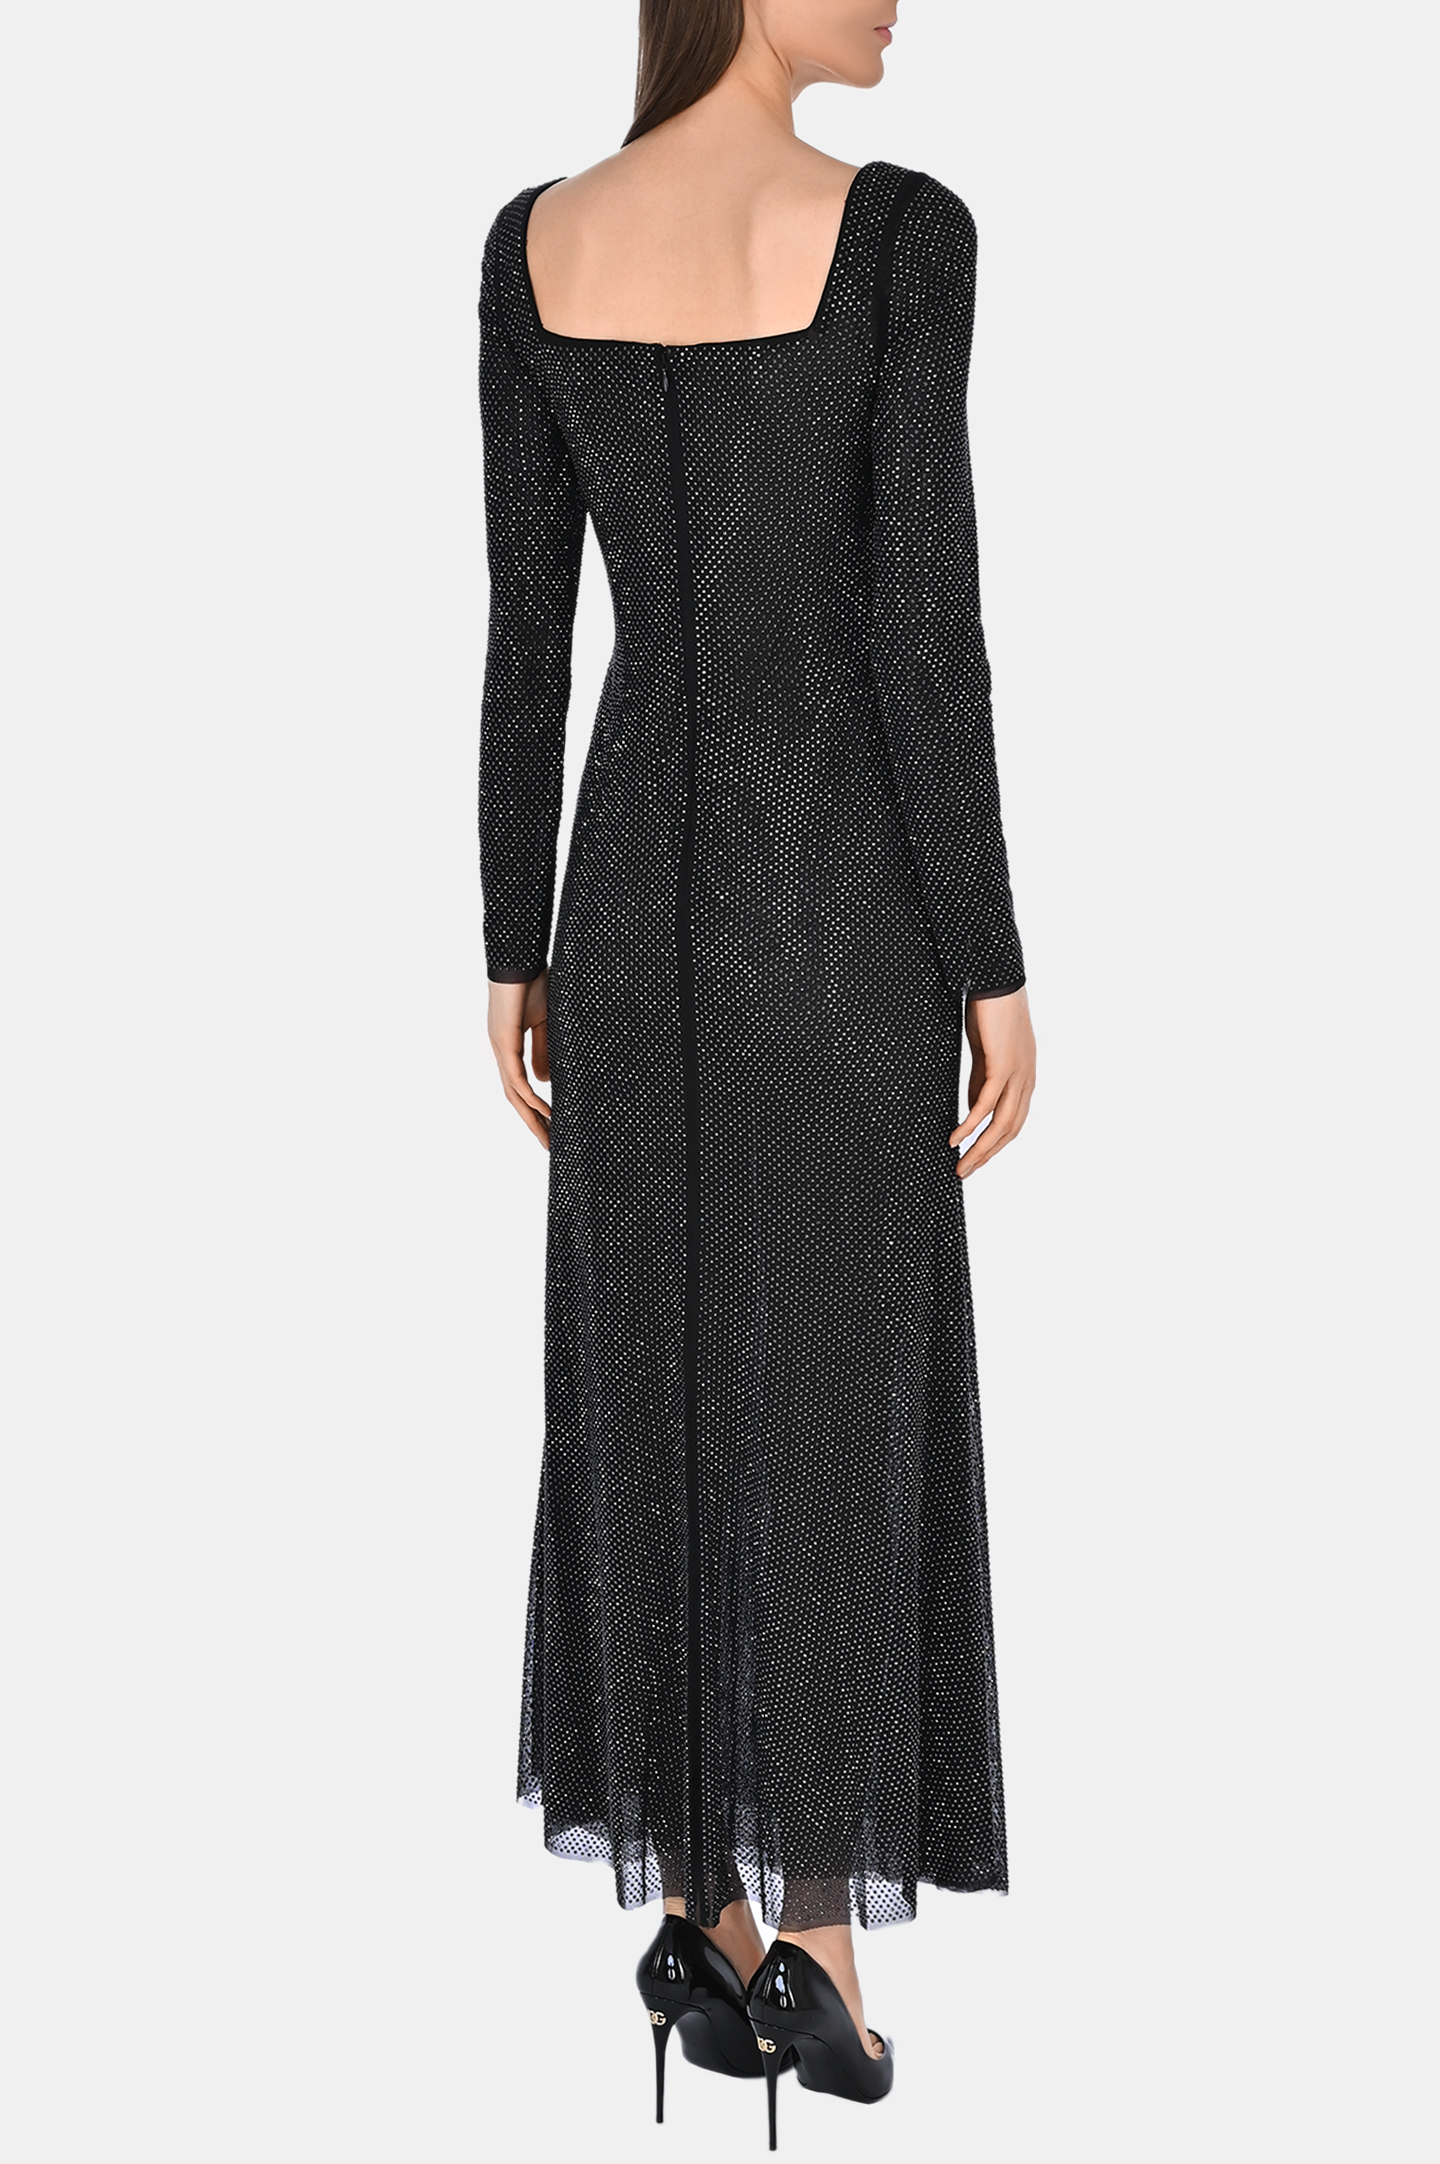 Платье SELF PORTRAIT RS24019MB, цвет: Черный, Женский